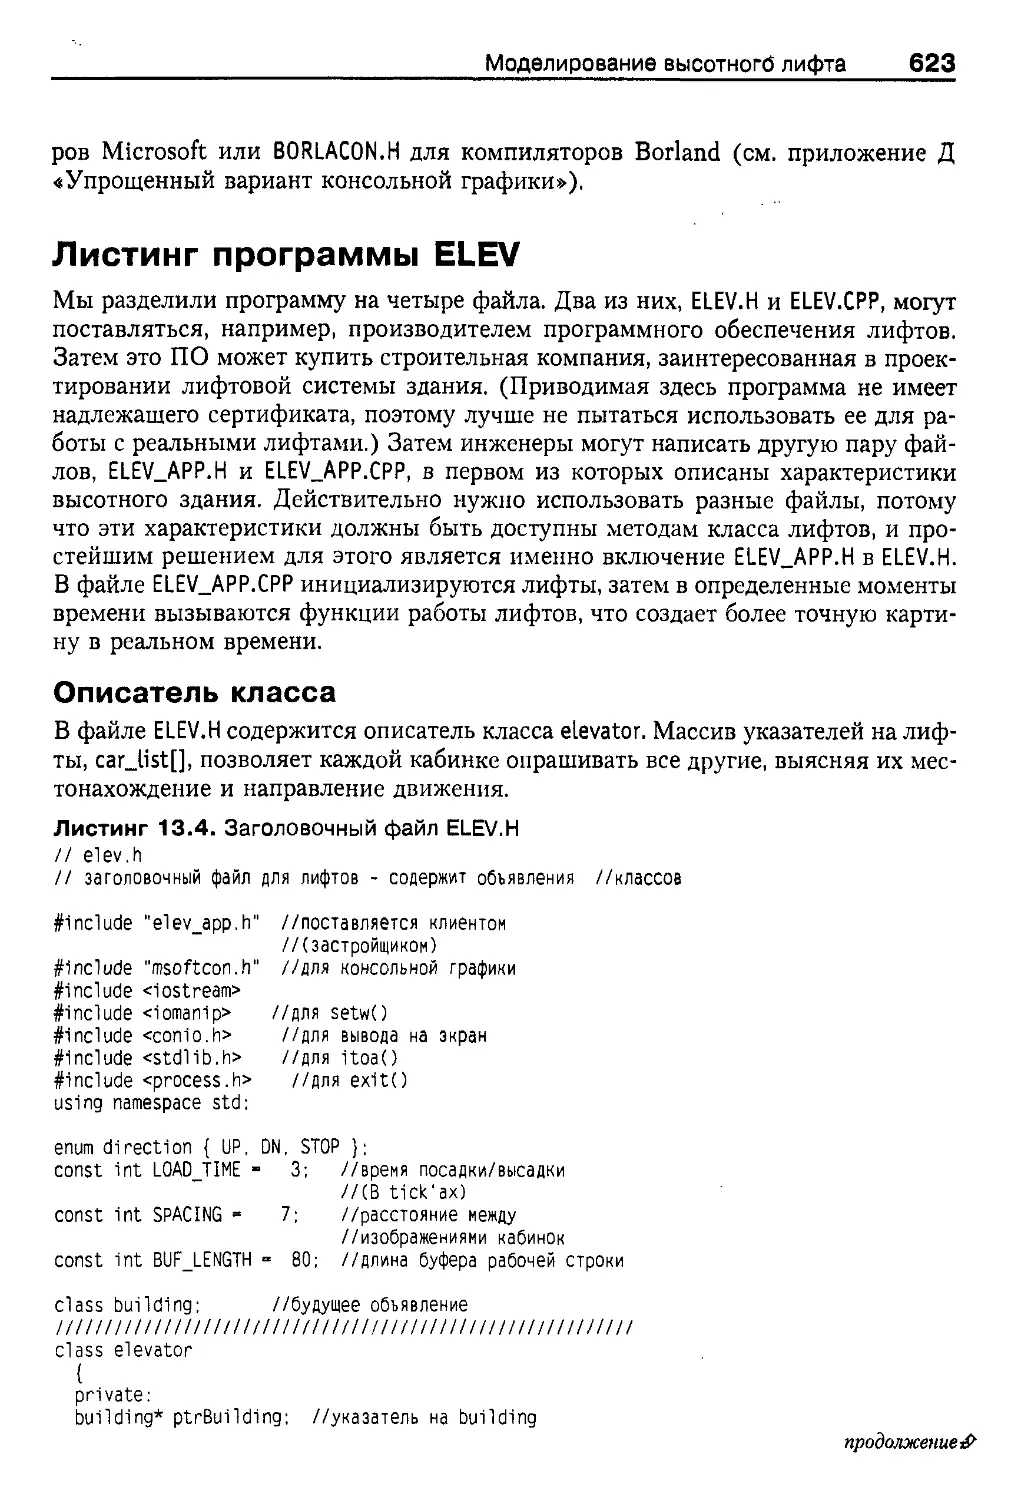 Листинг программы ELEV